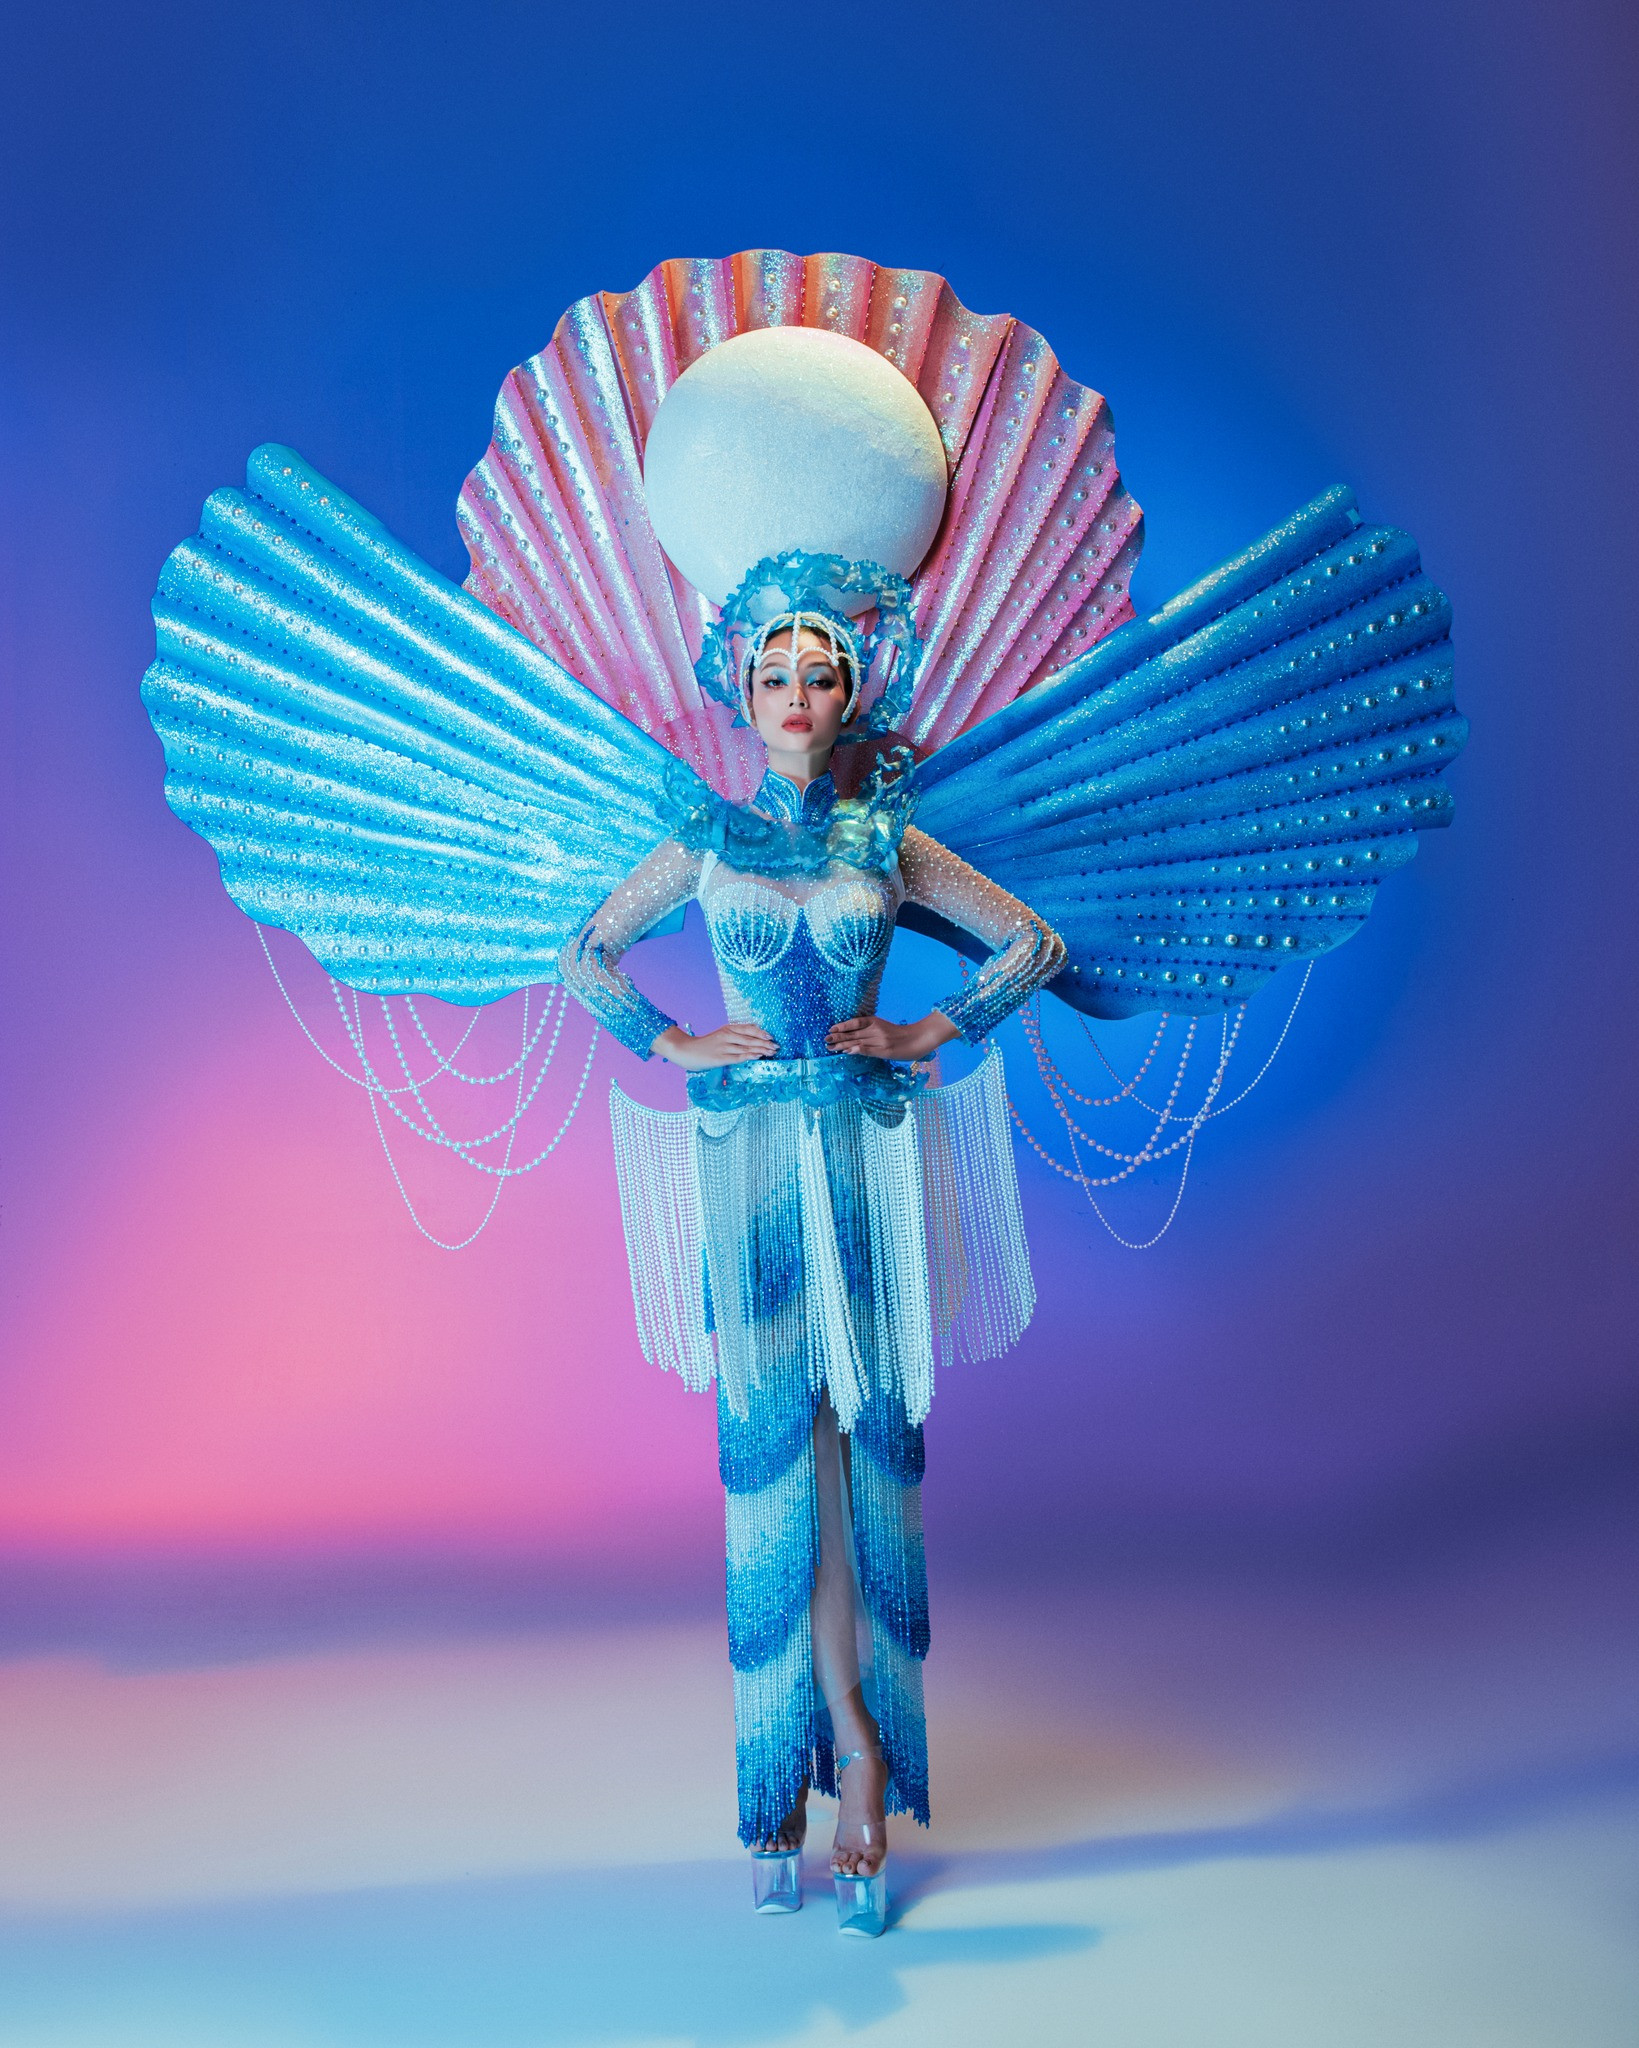 Lâm Thu Hồng hóa nàng tiên của biển trong trang phục dân tộc mang tới The Miss Globe 2022 - Ảnh 1.